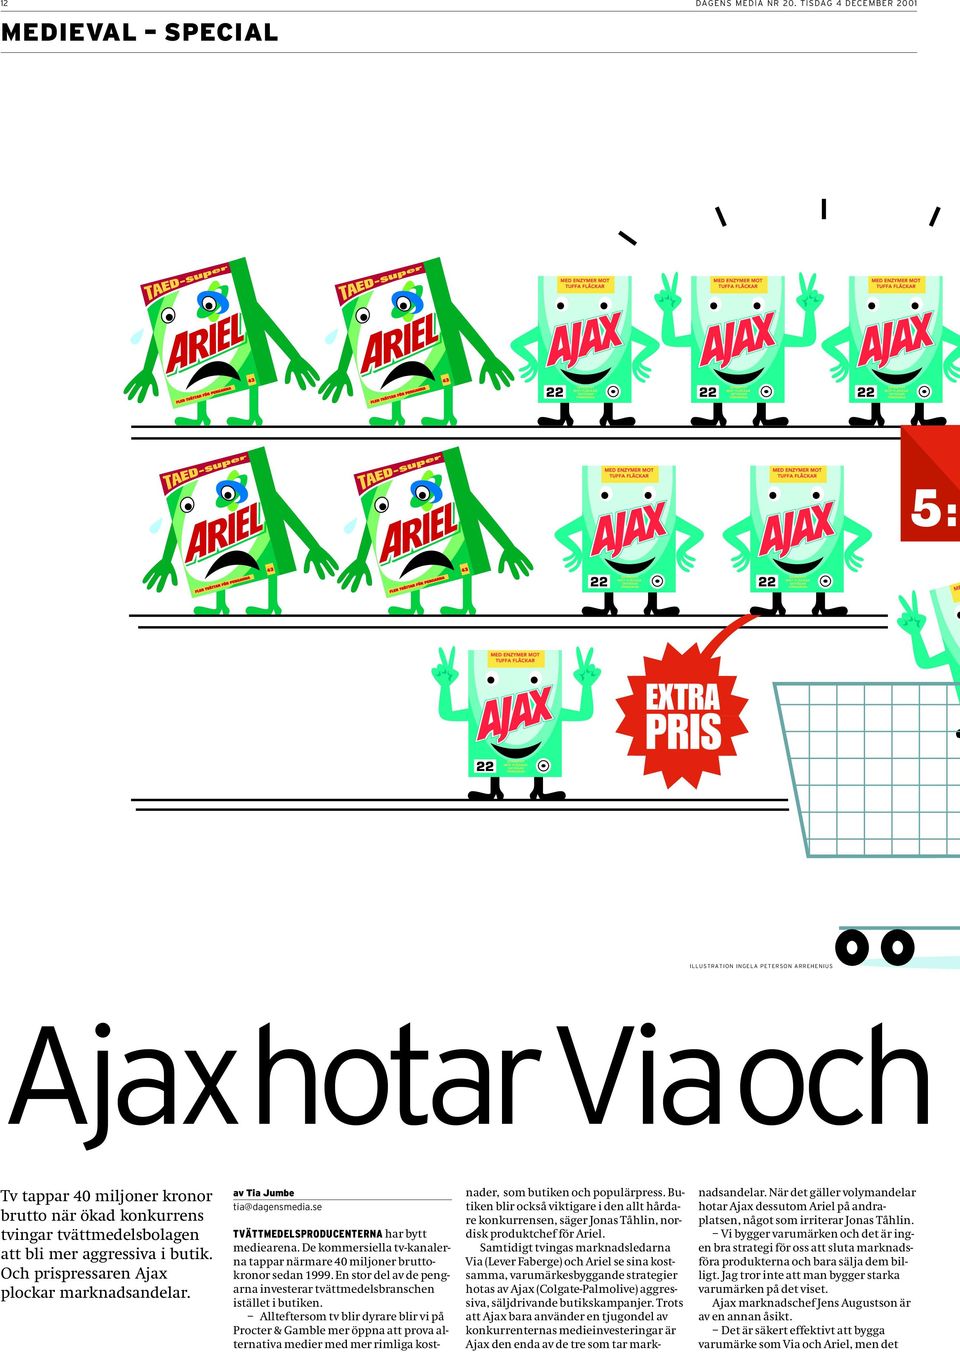 aggressiva i butik. Och prispressaren Ajax plockar marknadsandelar. av Tia Jumbe tia@dagensmedia.se TVÄTTMEDELSPRODUCENTERNA har bytt mediearena.